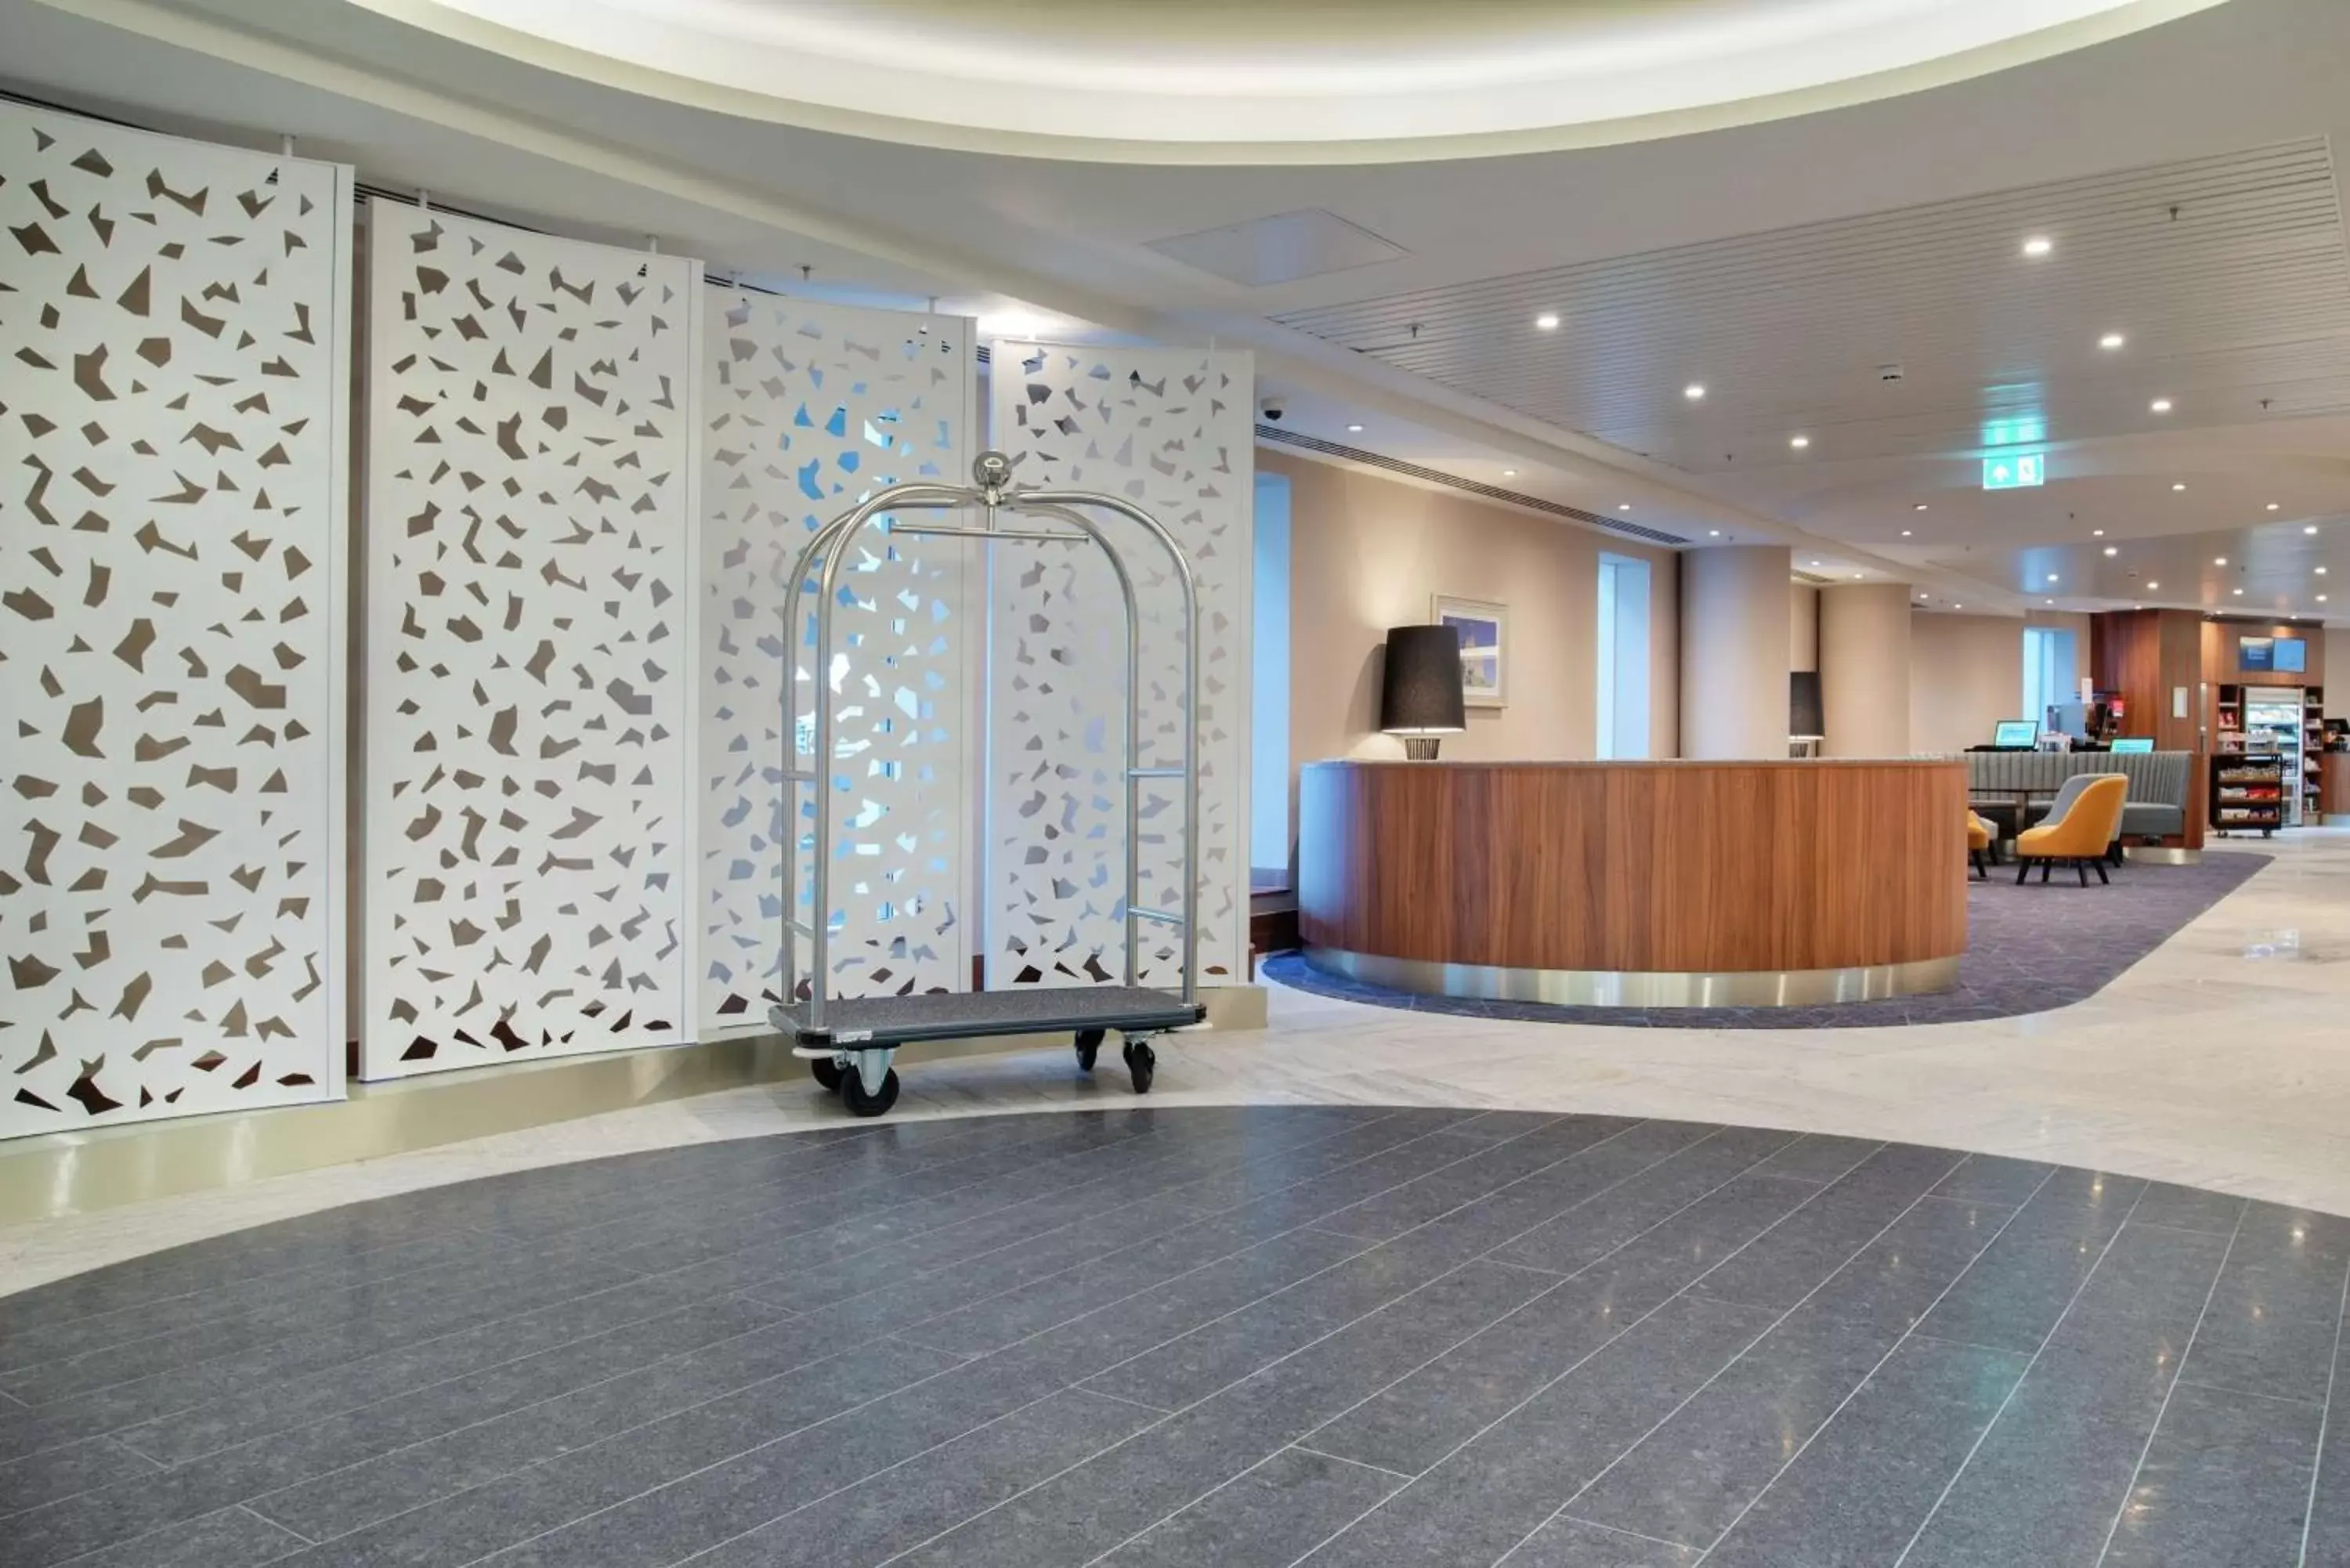 Property building, Lobby/Reception in Hilton Garden Inn London Heathrow Terminal 2 and 3